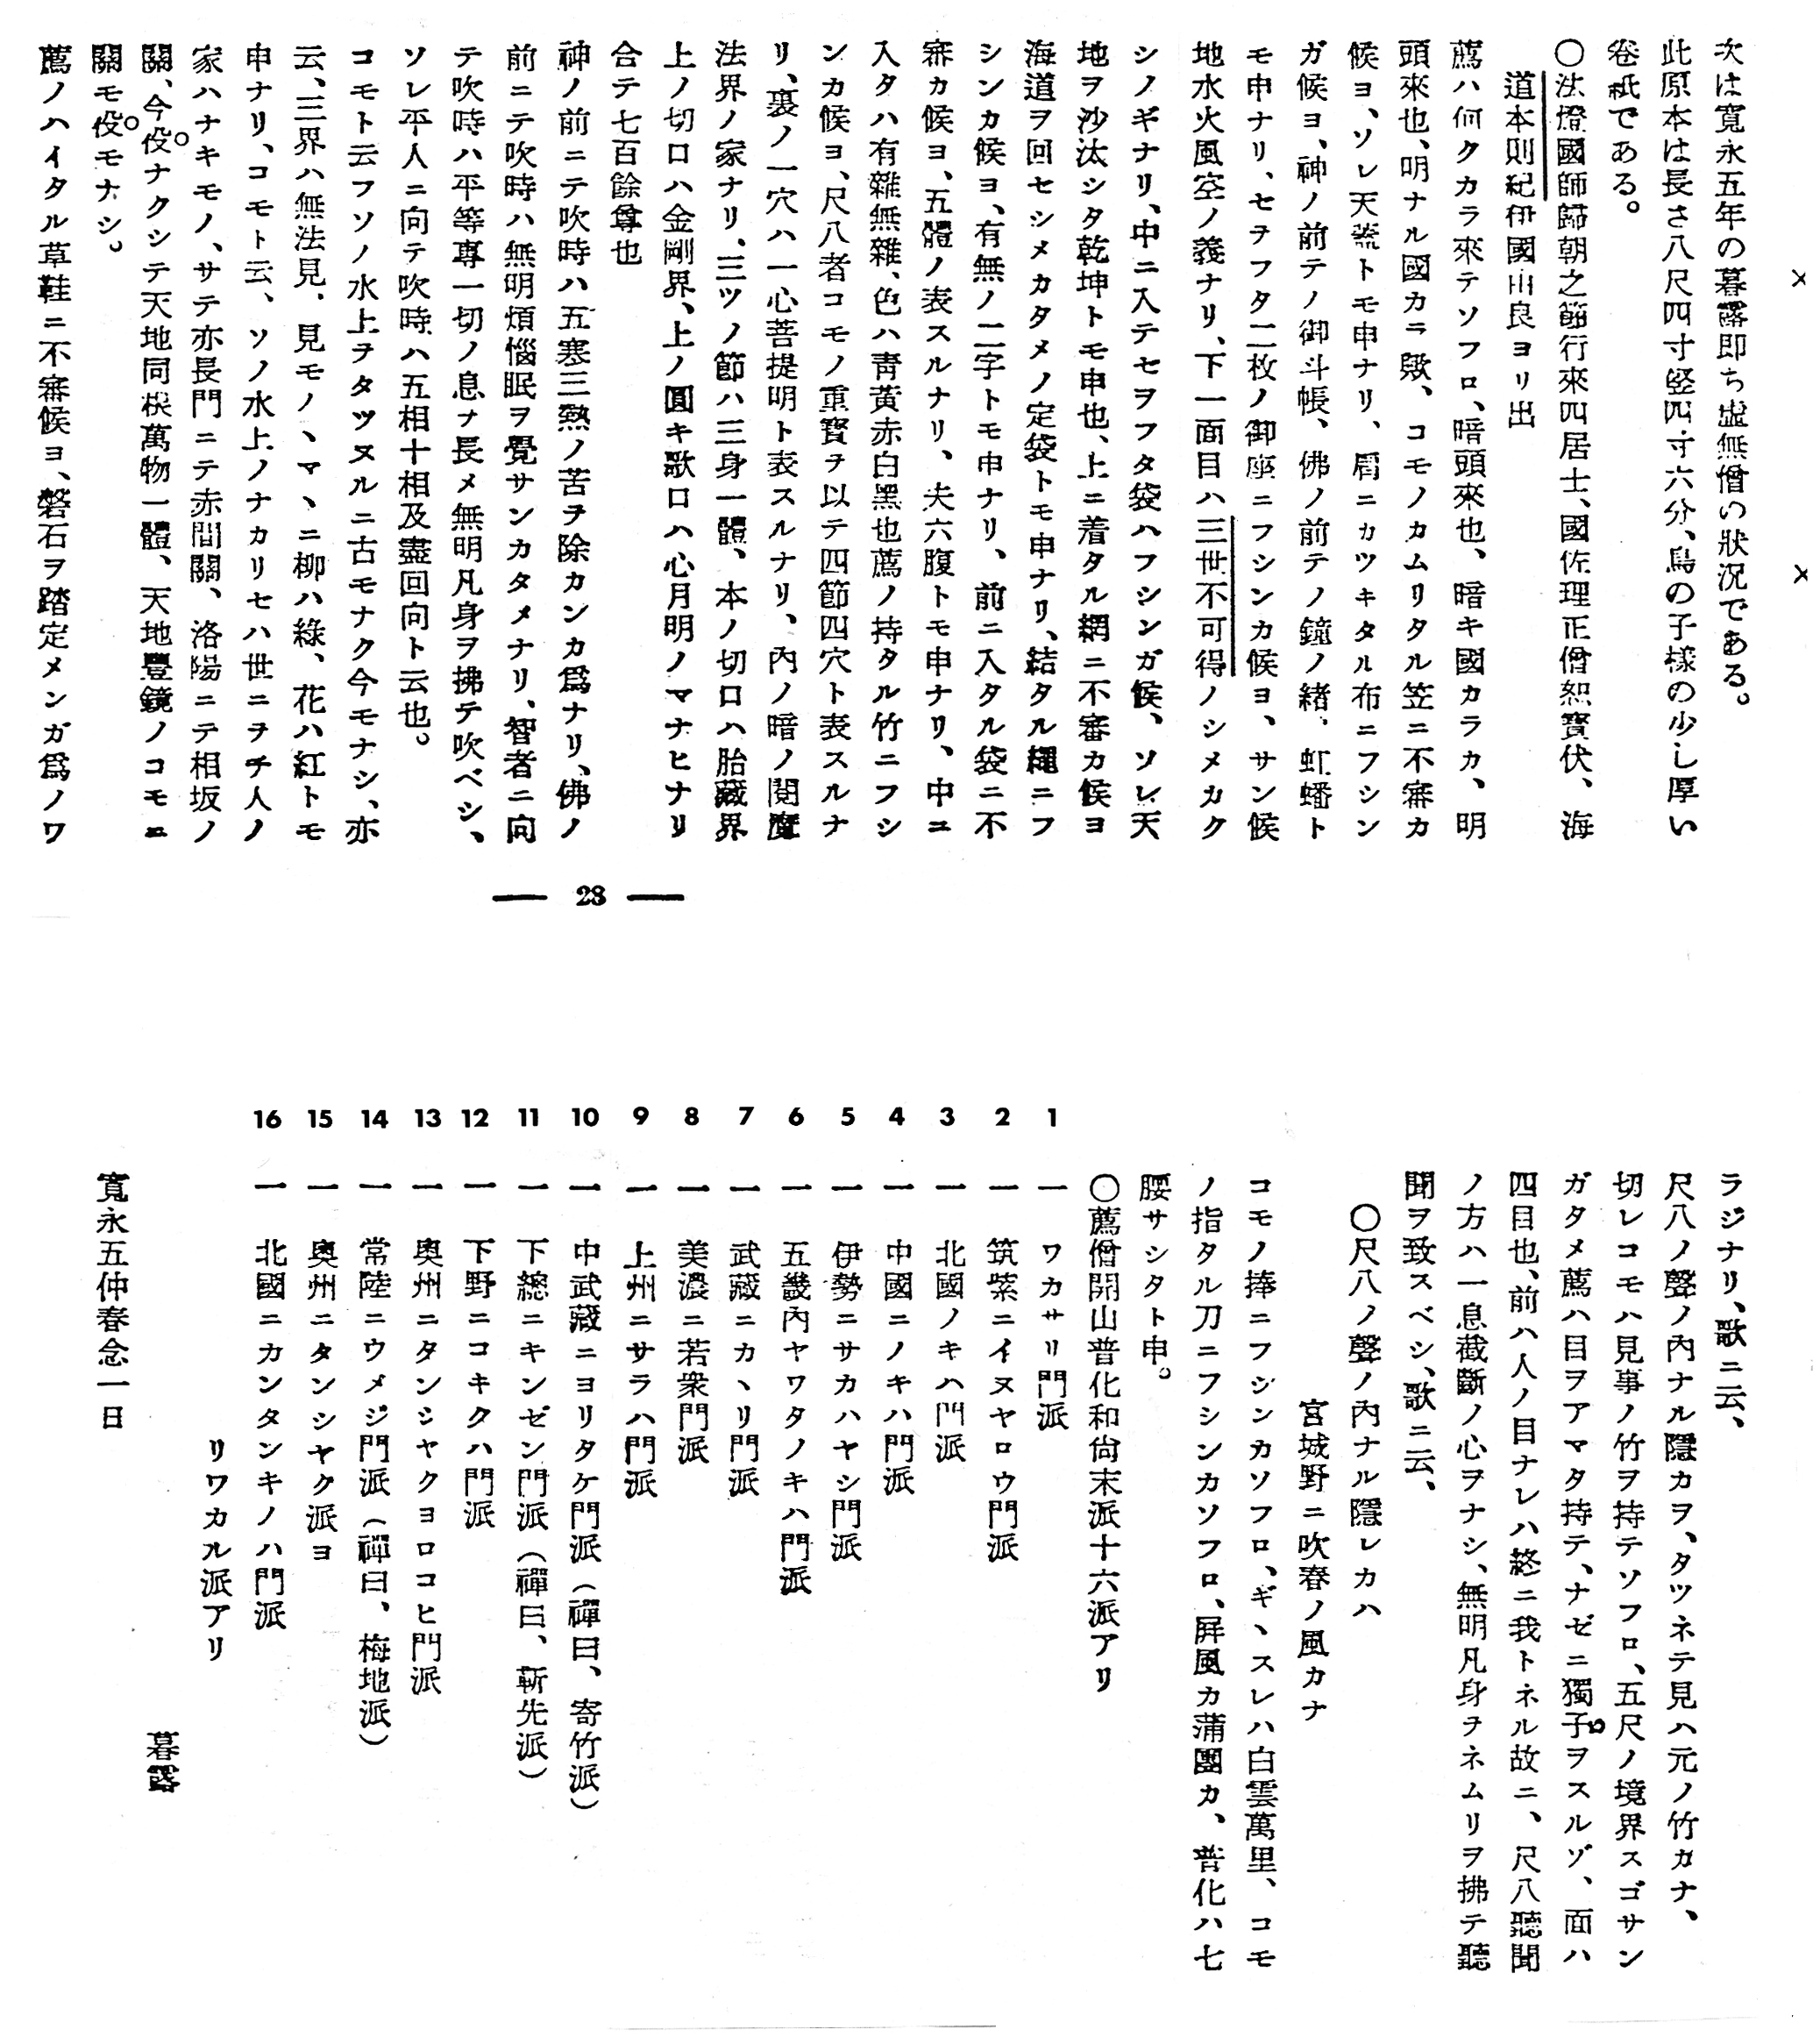 'Kaidō honsoku' text in Sankyoku 188, November, 1937